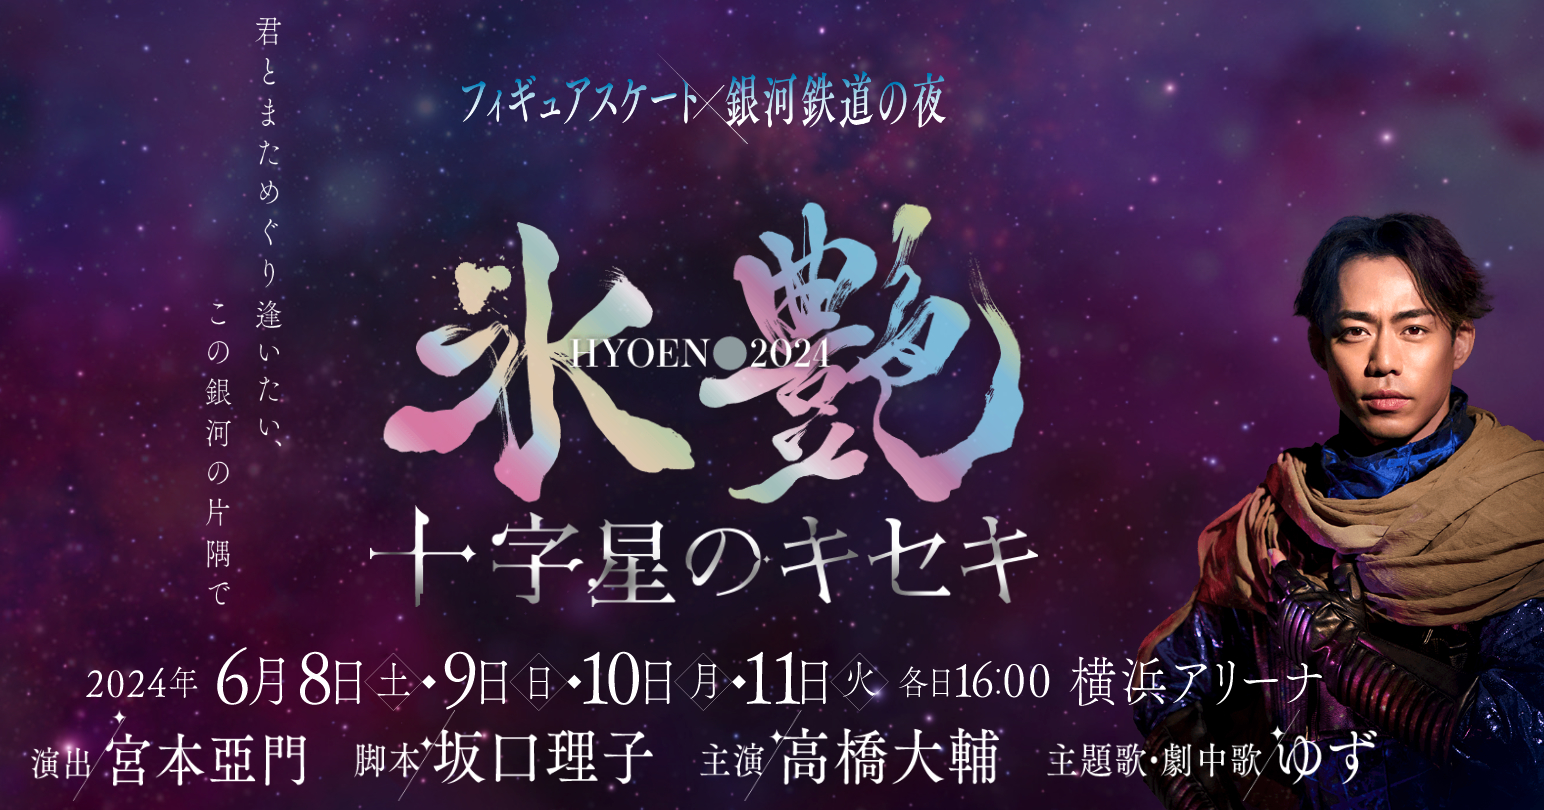 『氷艶 hyoen 2024-十字星のキセキ-』のアフタートークショーが、6月8日（土）～11日（火）の公演後に開催される